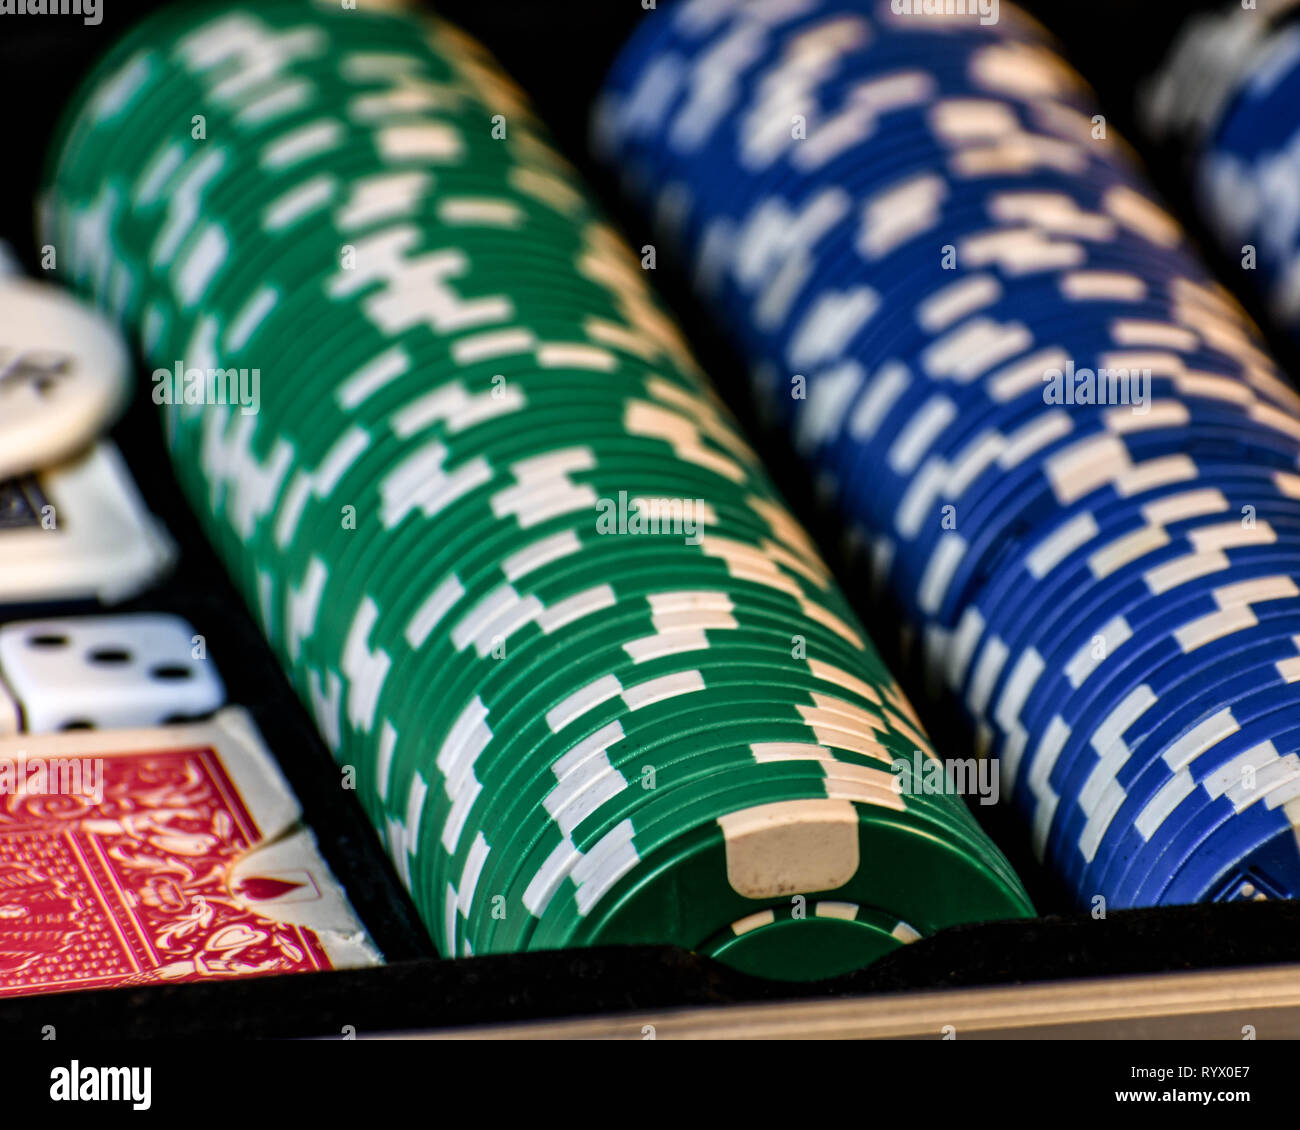 Une scène de poker avec des cartes, des jetons et de feutre vert. Jeu de poker, un arrière-plan sombre. Banque D'Images